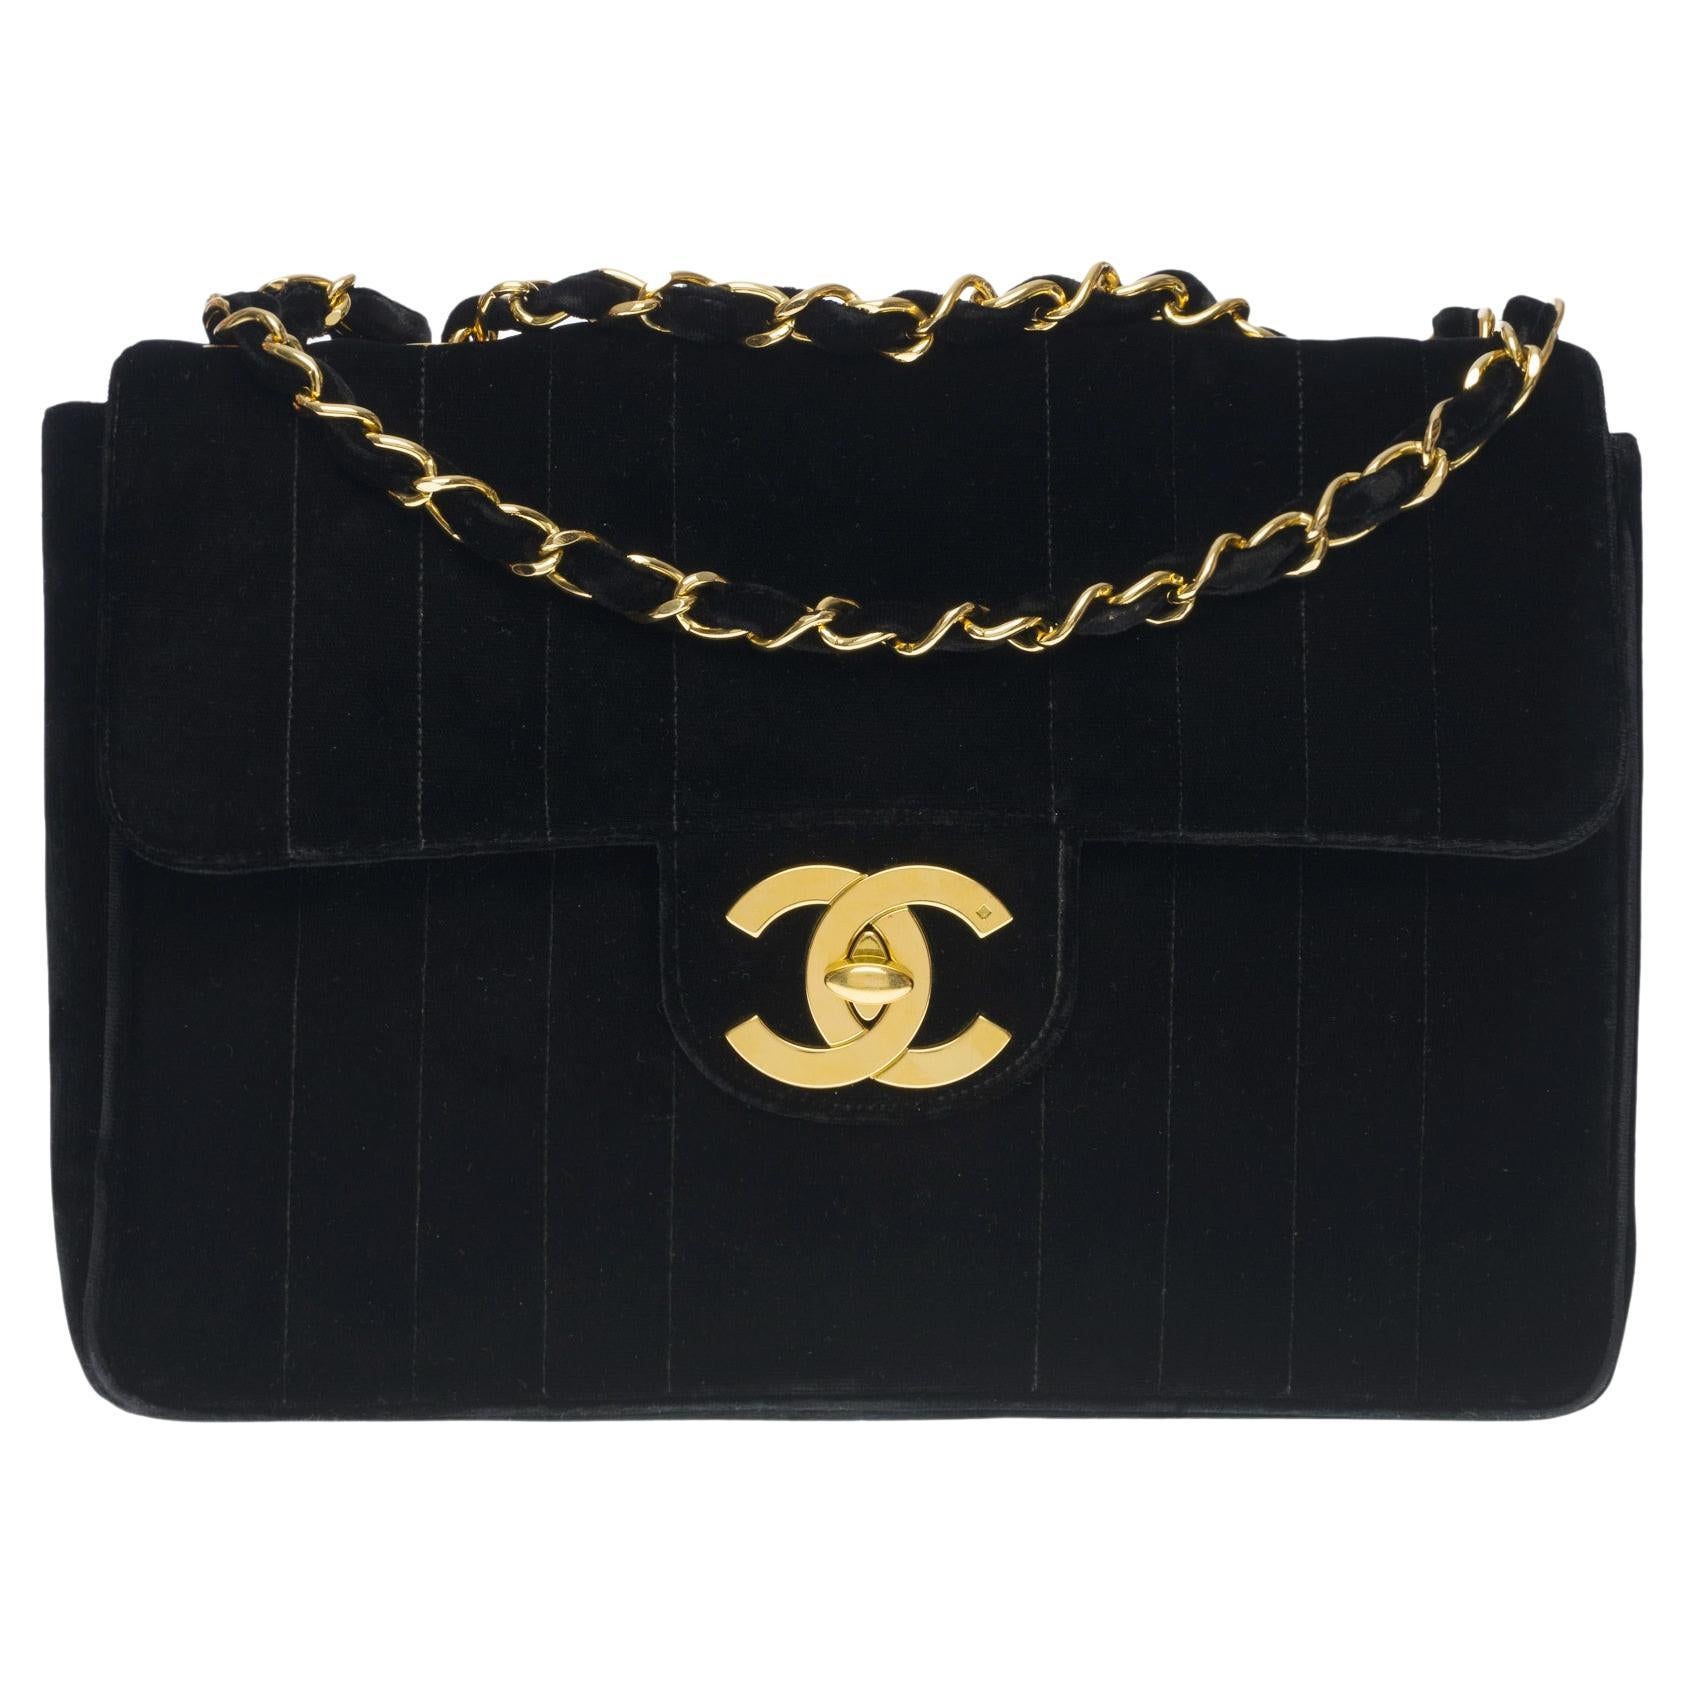 Rare Chanel Timeless Jumbo single flap shoulder bag in black quilted velvet, GHW